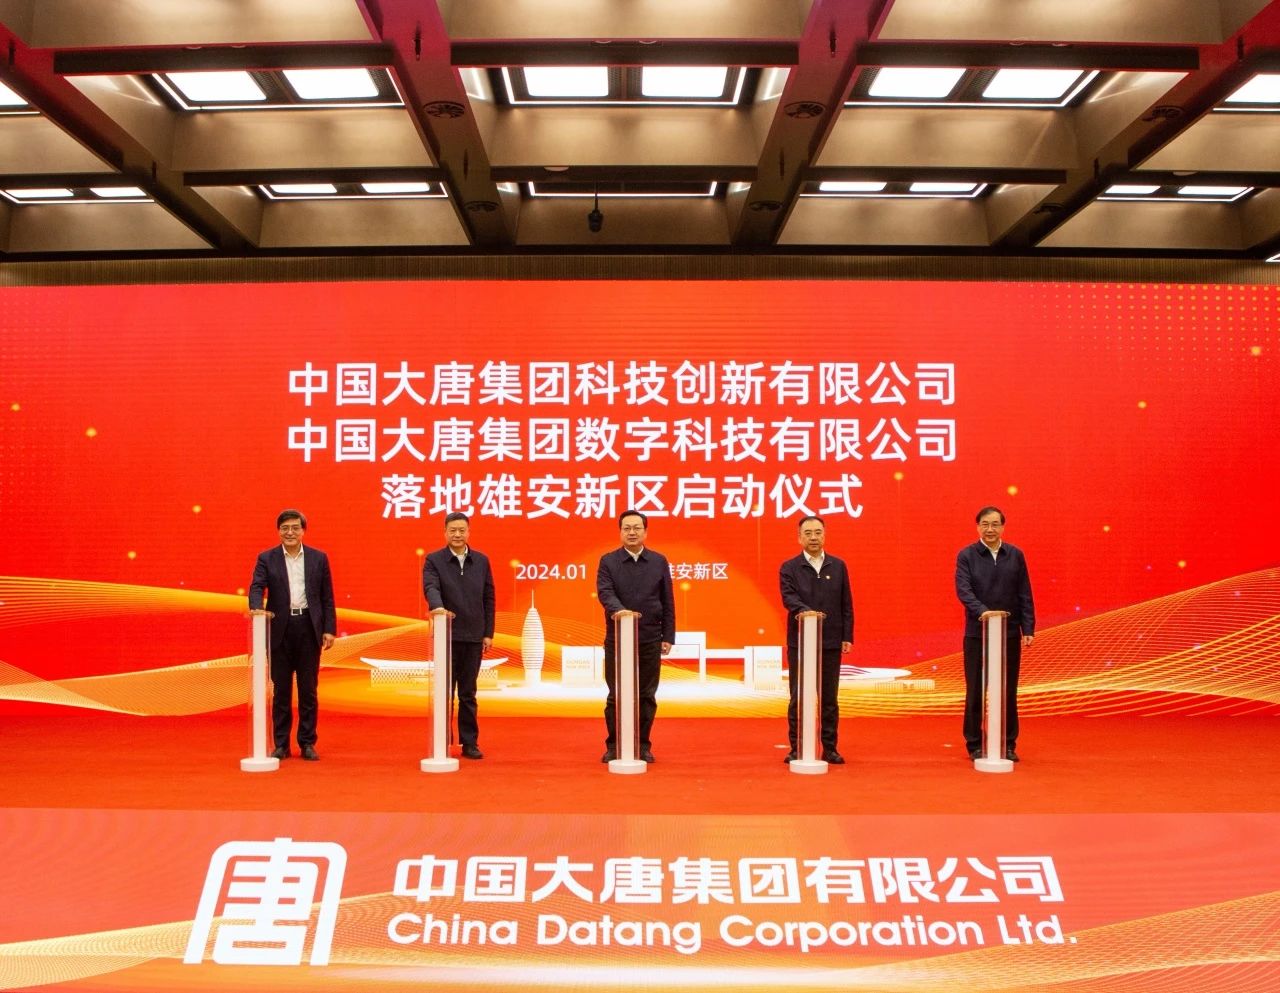 中国大唐科技创新公司、数字科技公司落地雄安新区